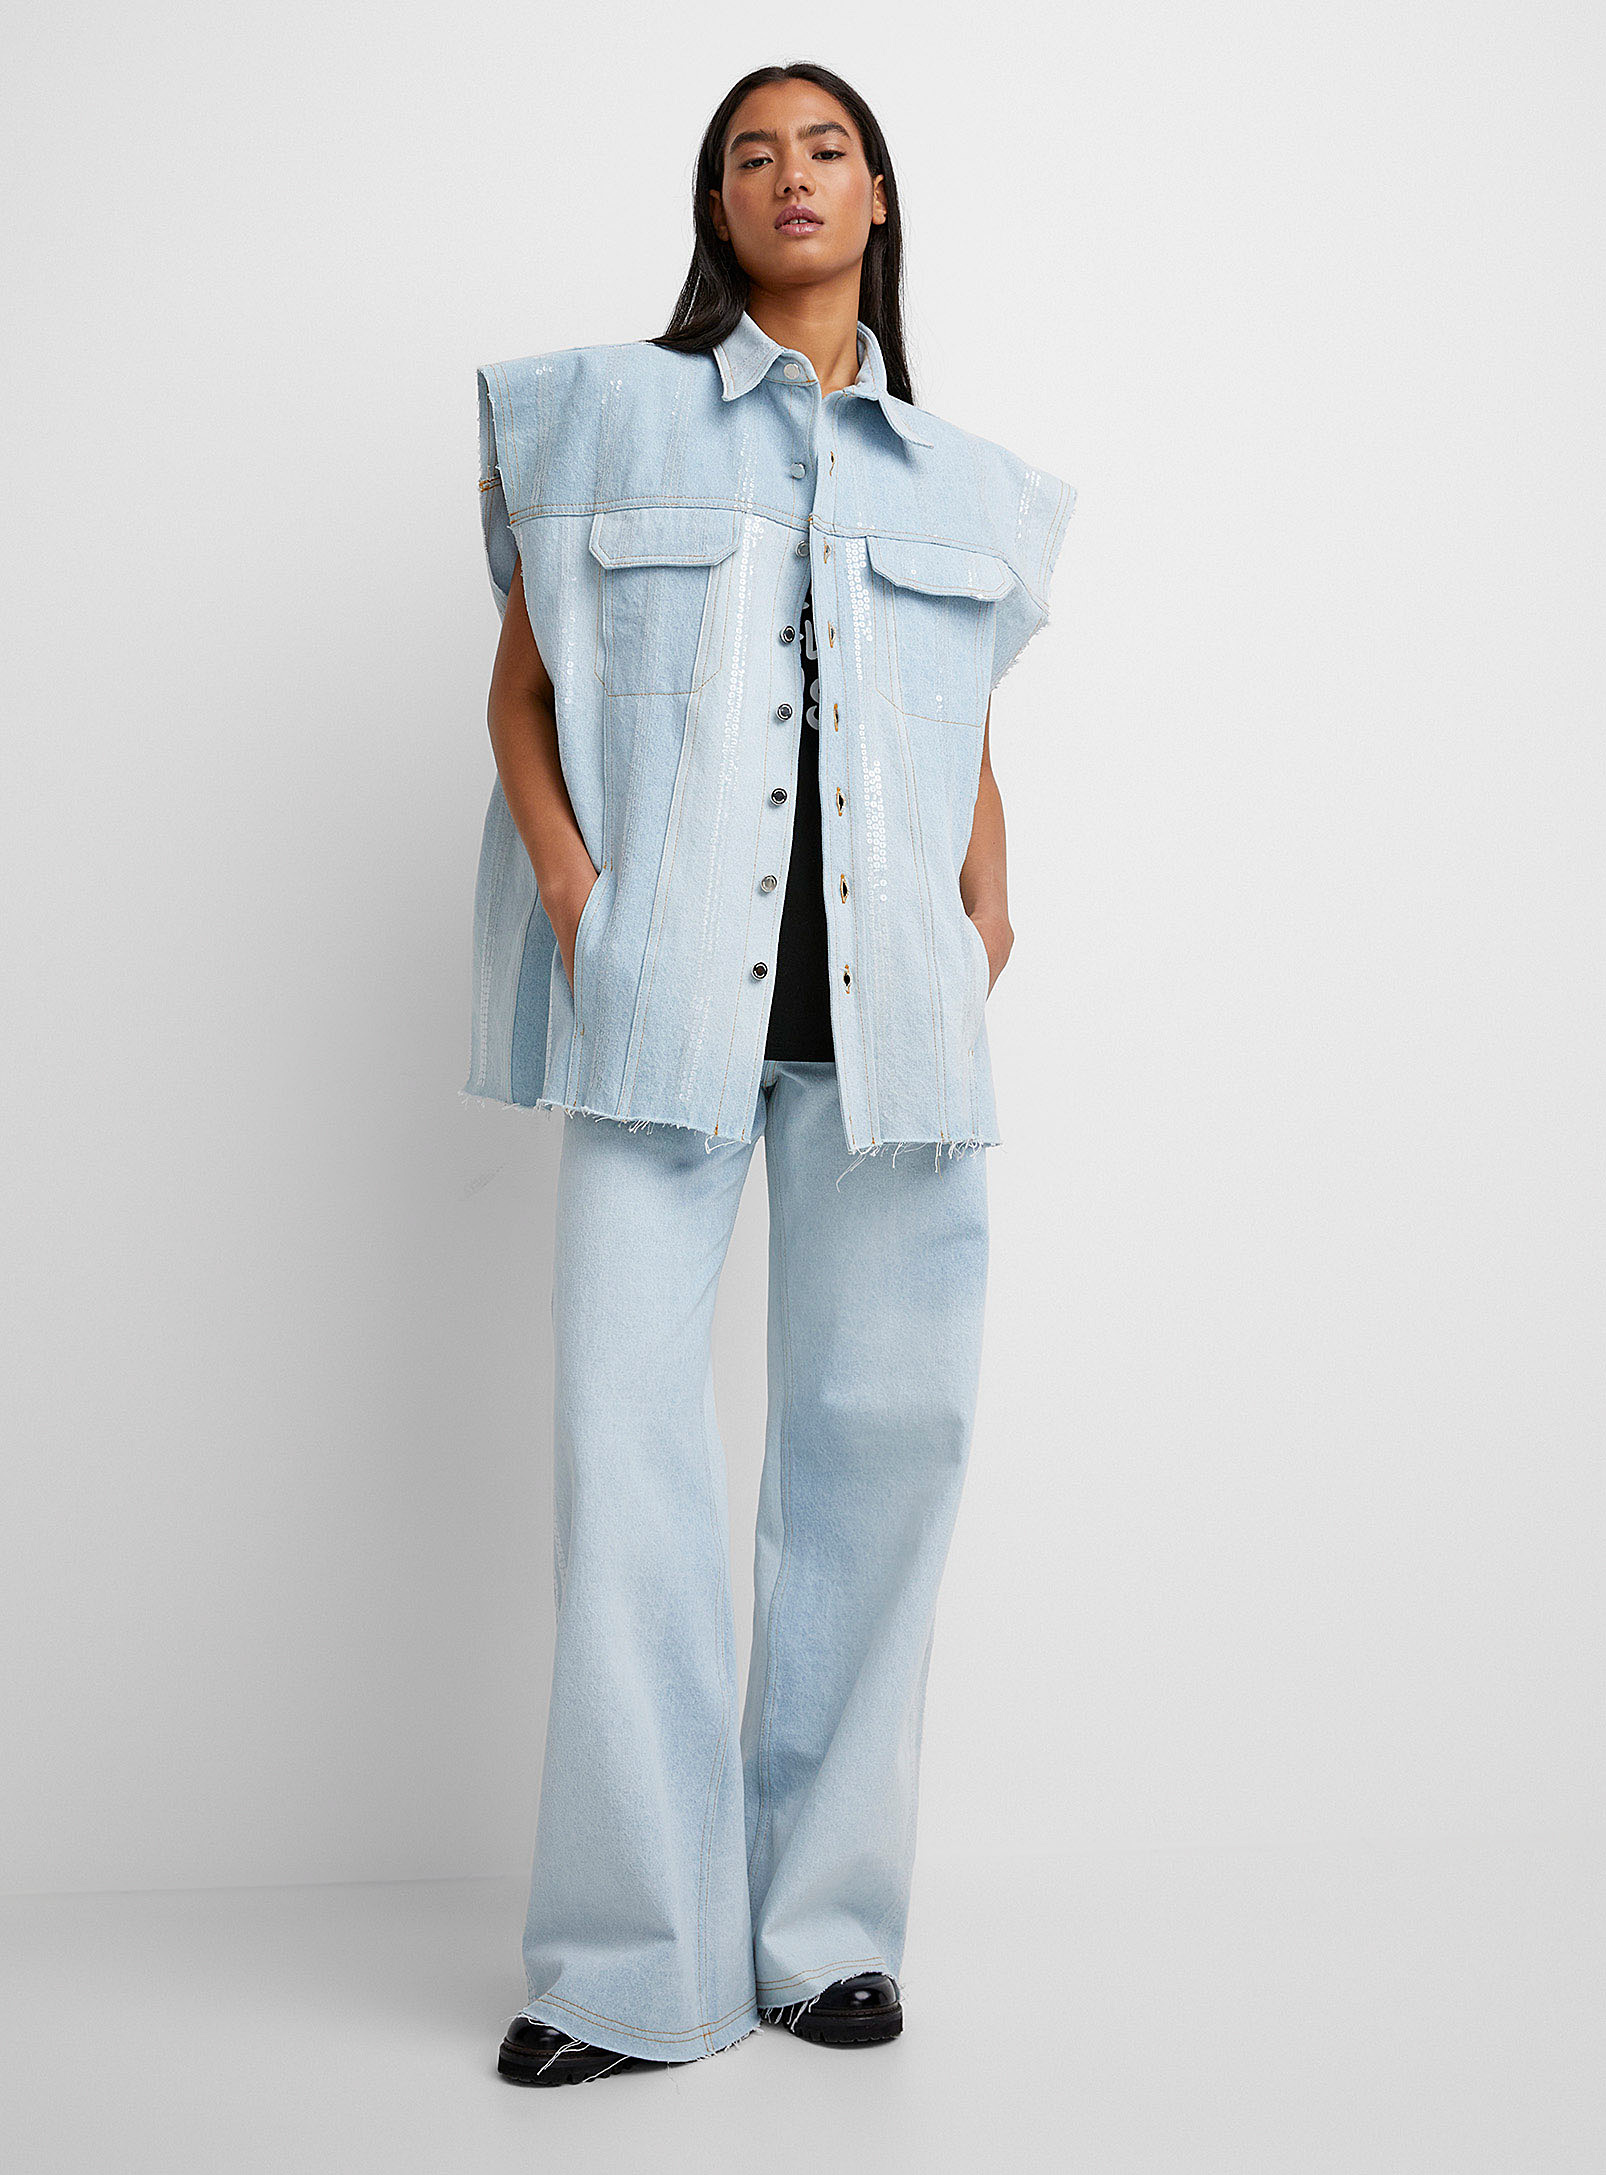 Jeanne Friot - Women's Sequined jean